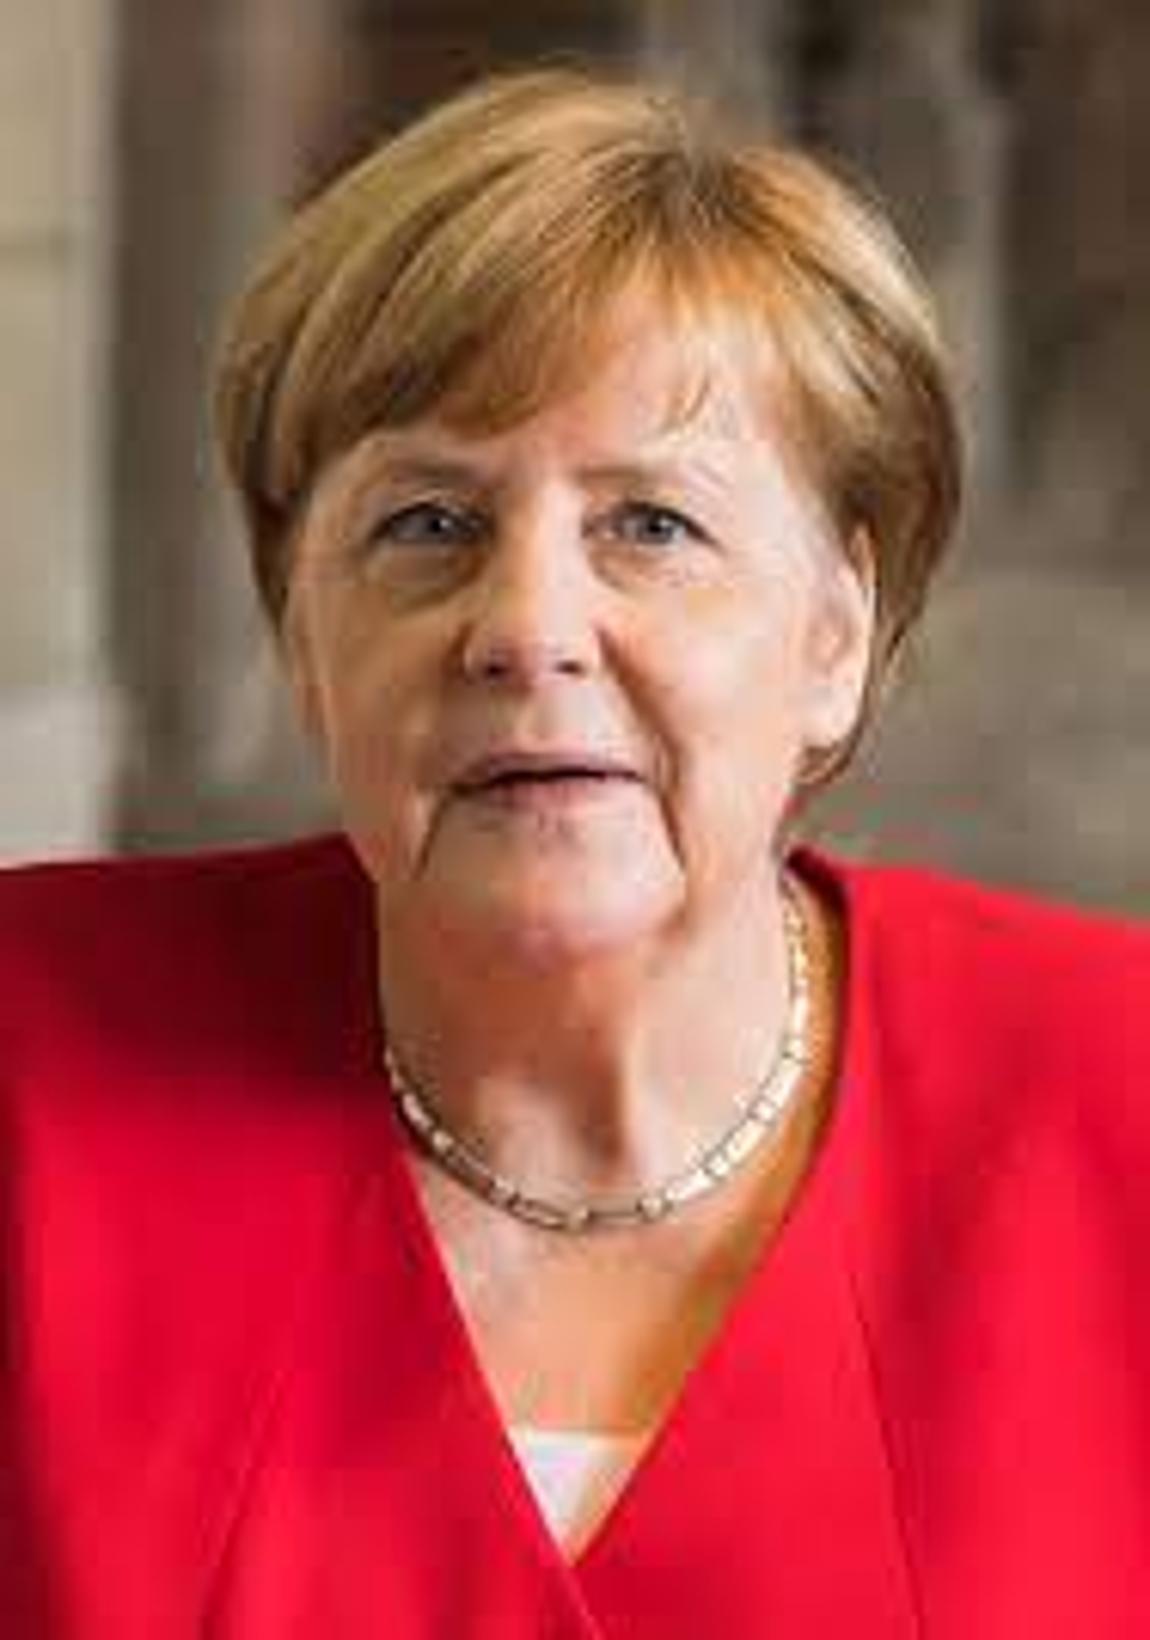 Merkelova brani svoju politiku prema Ukrajini